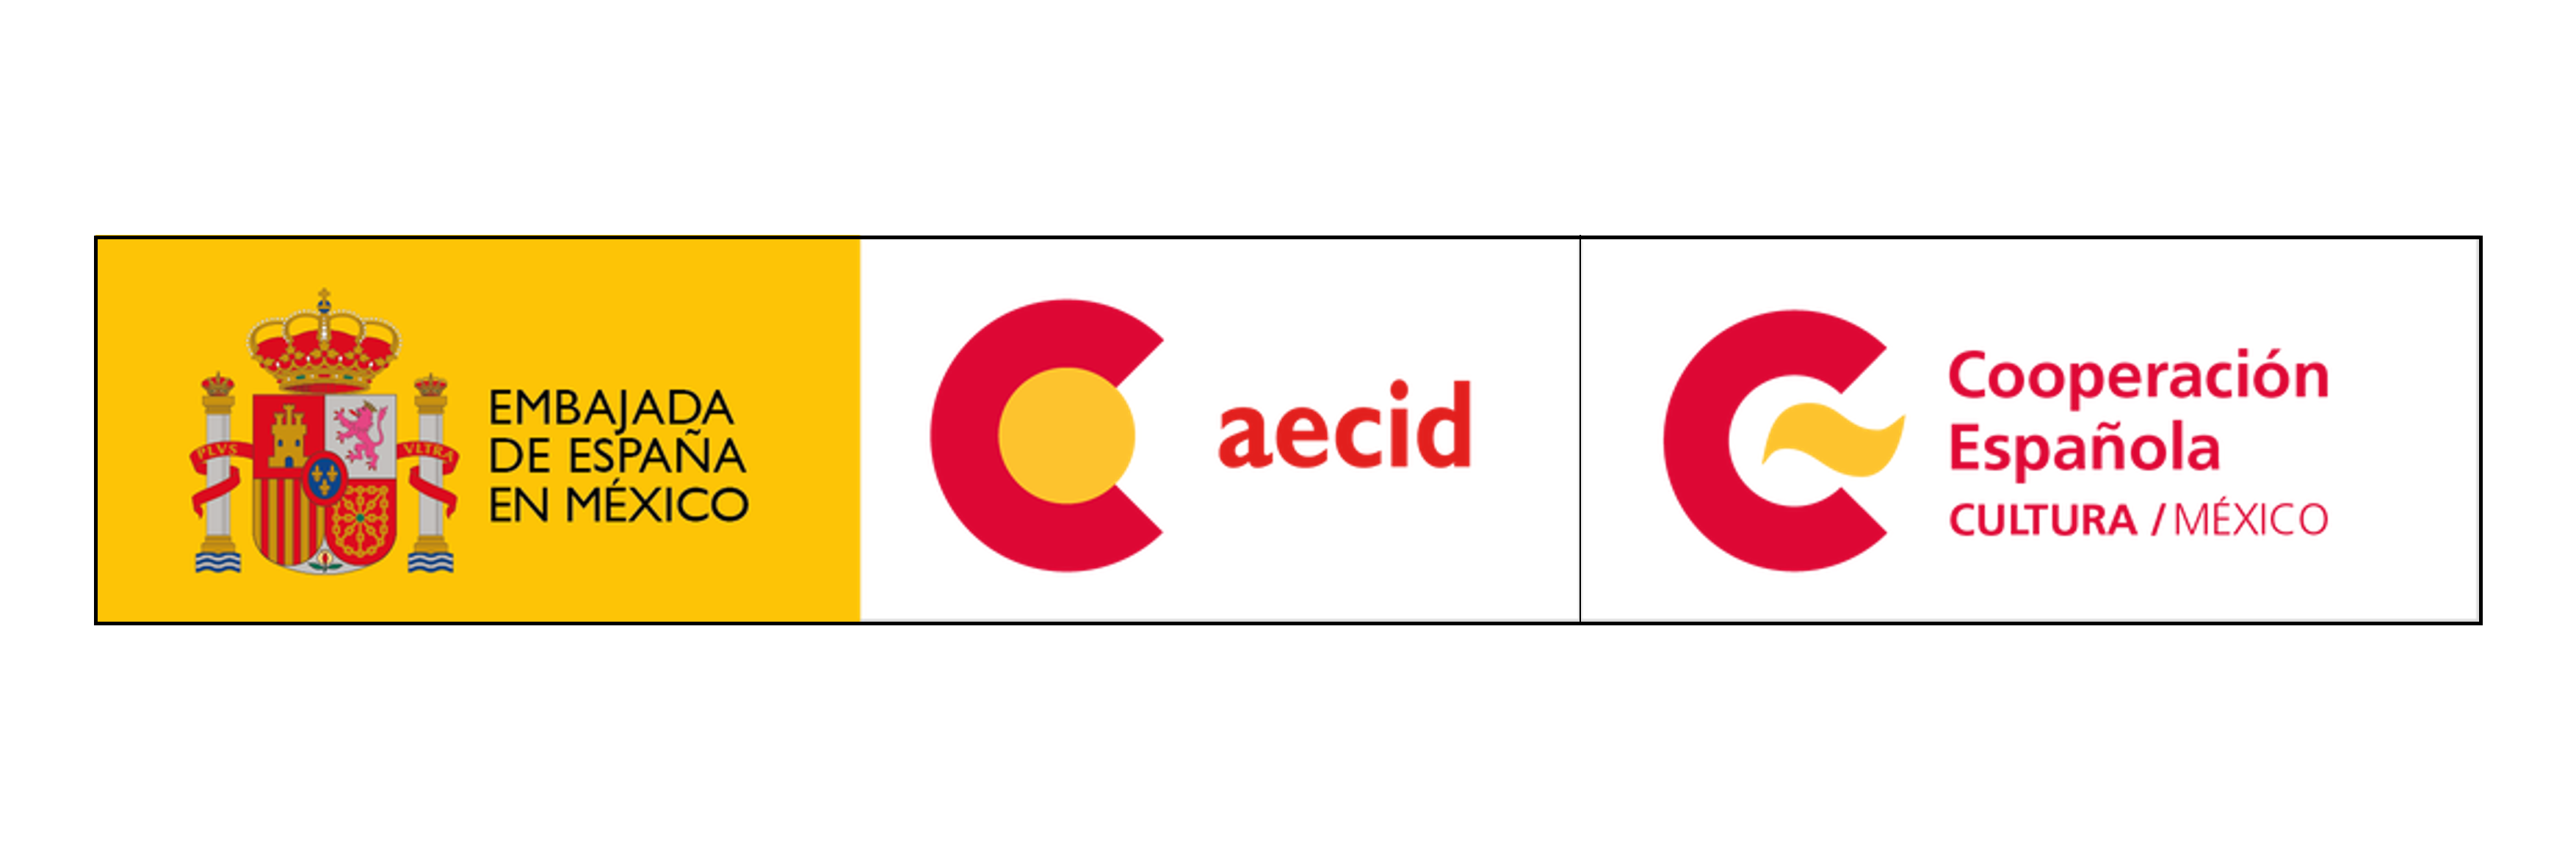 Aecid España